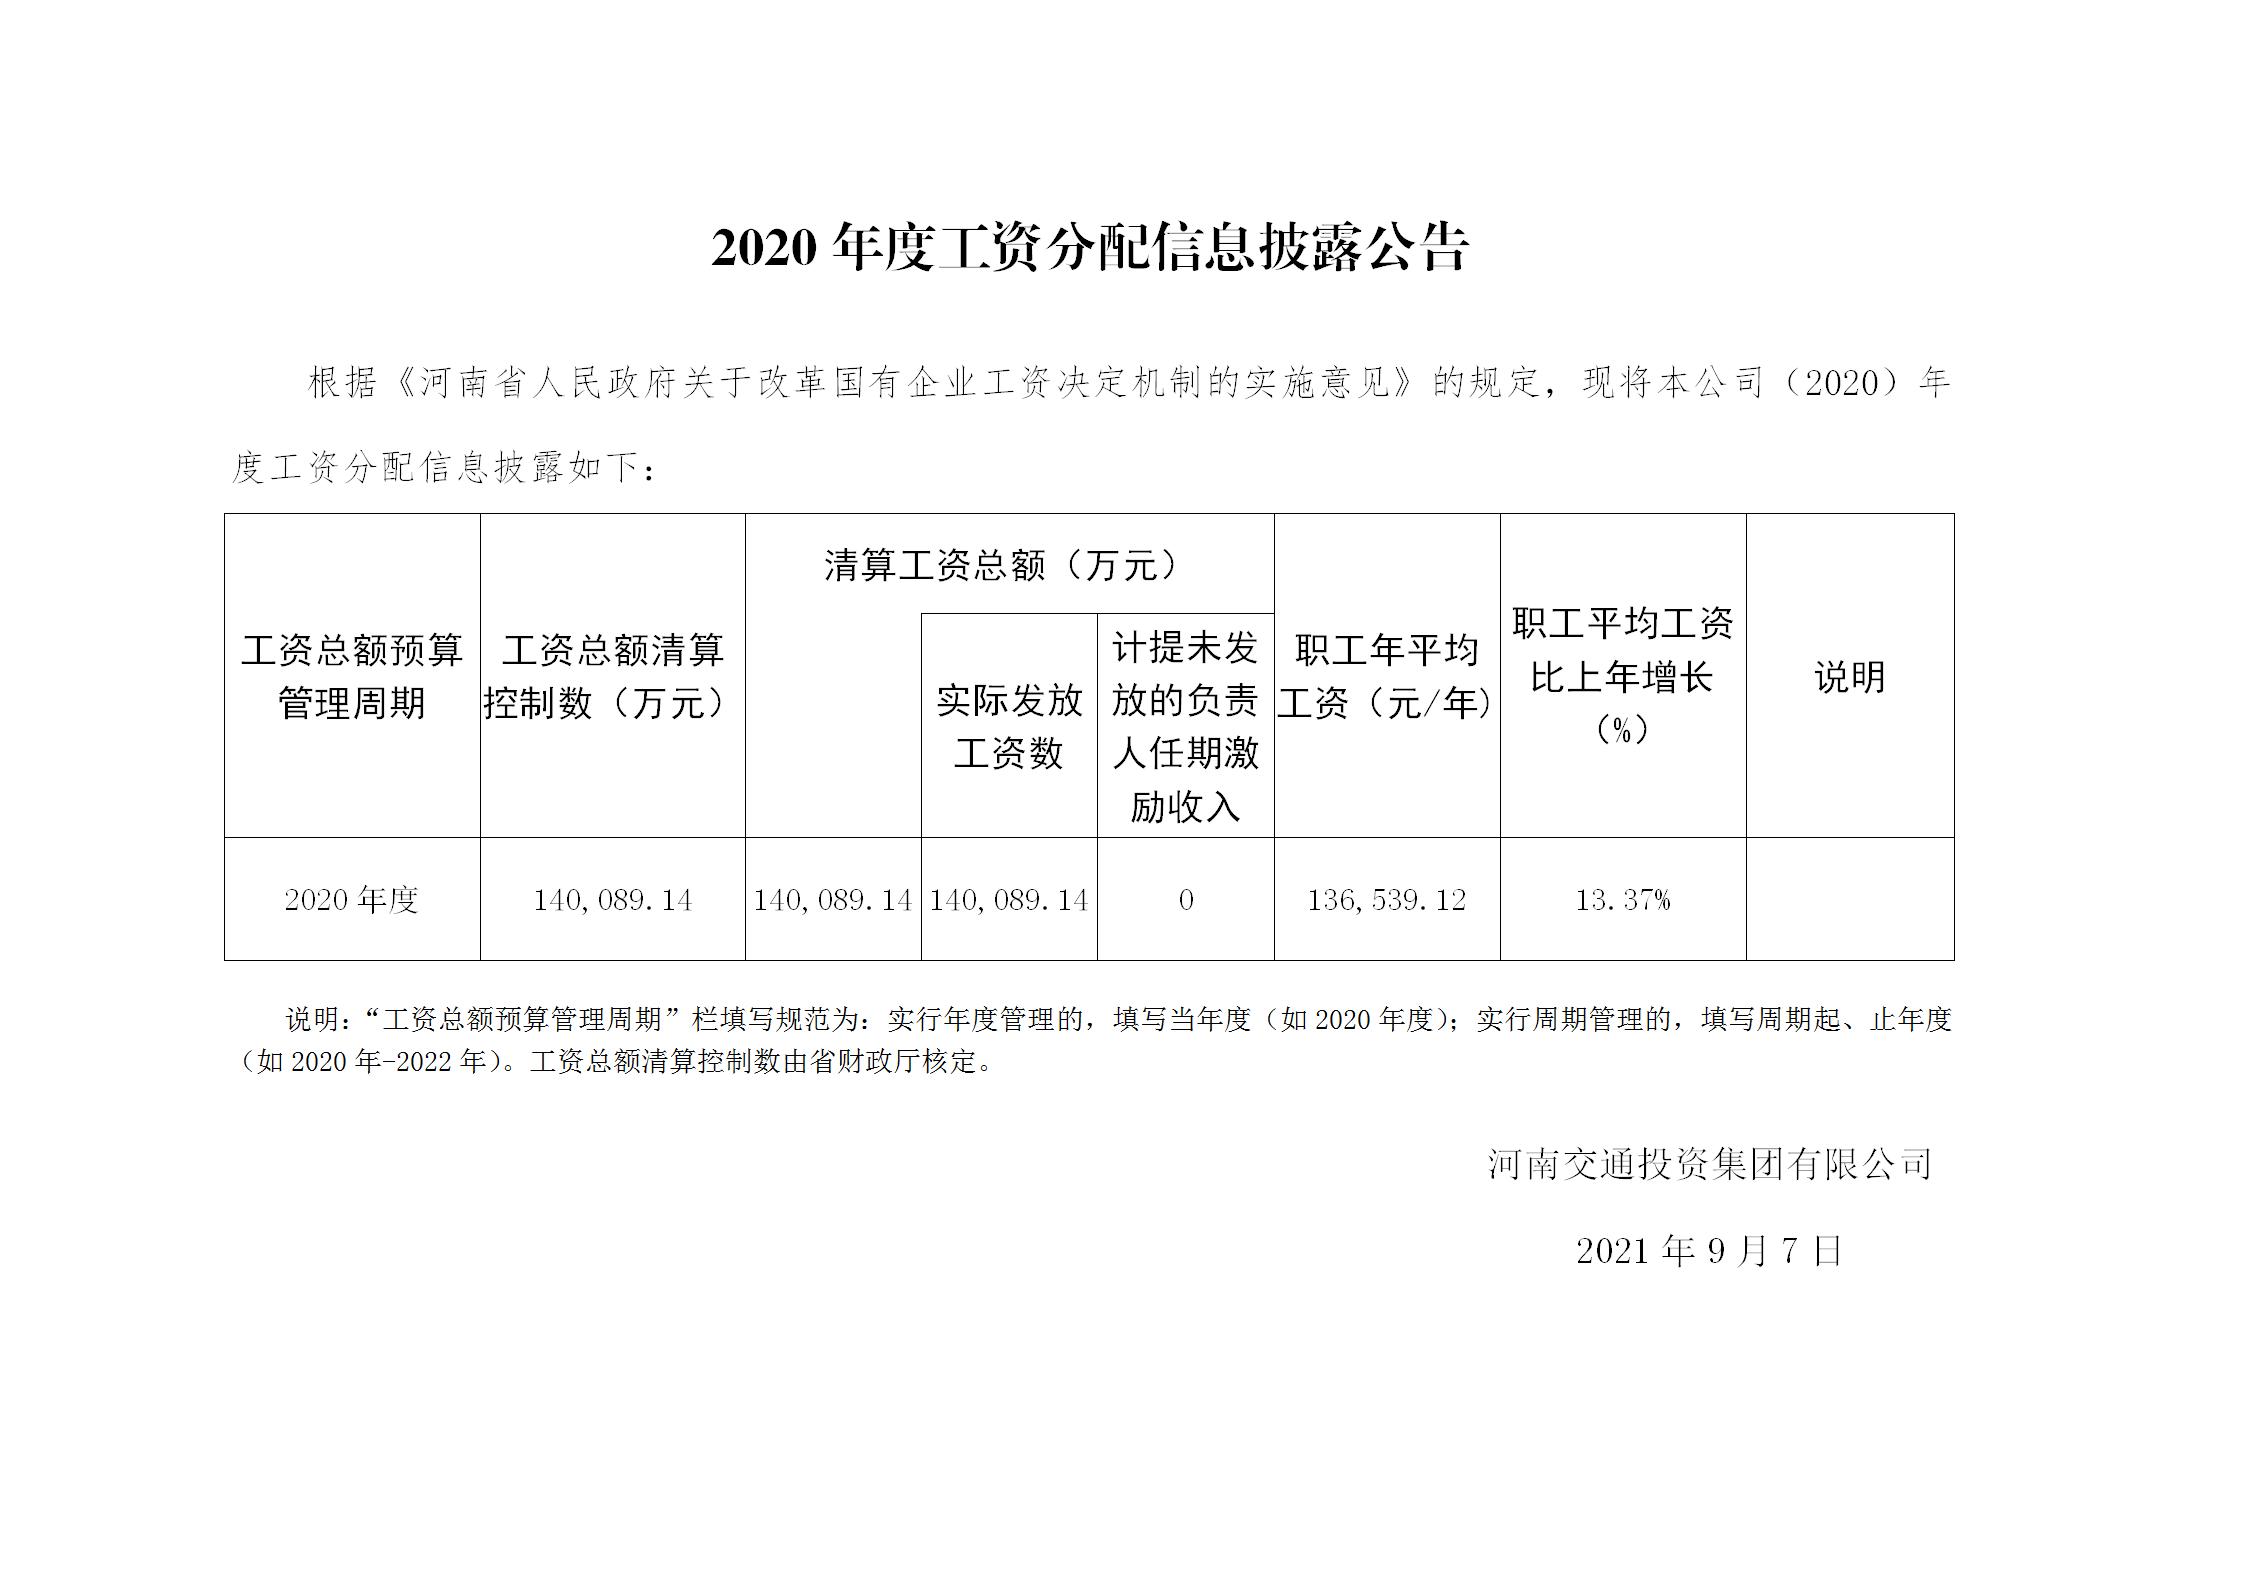 河南交通投資集團有限公司關于2020年度工資總額預算執行情況及清算結果的報告-0907披露_01.jpg